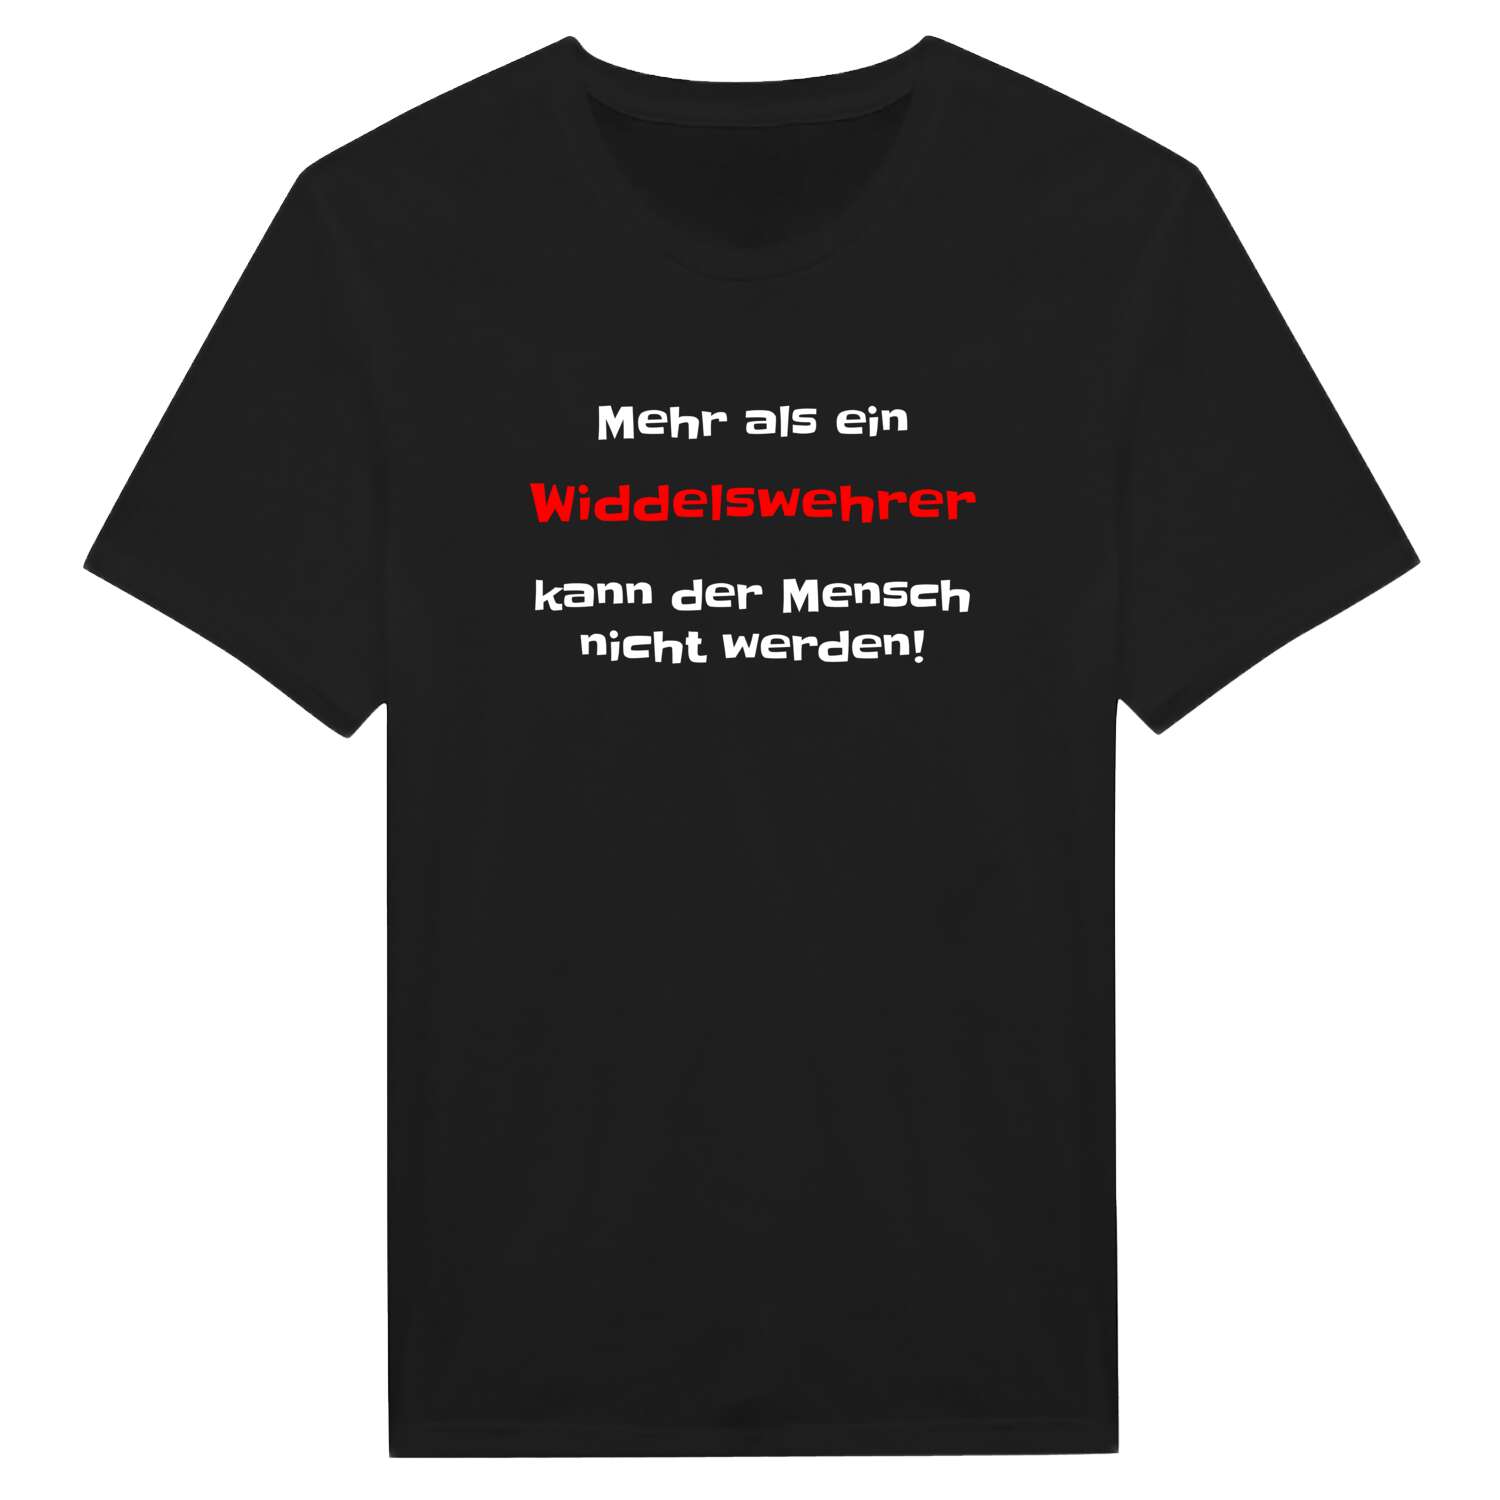 Widdelswehr T-Shirt »Mehr als ein«